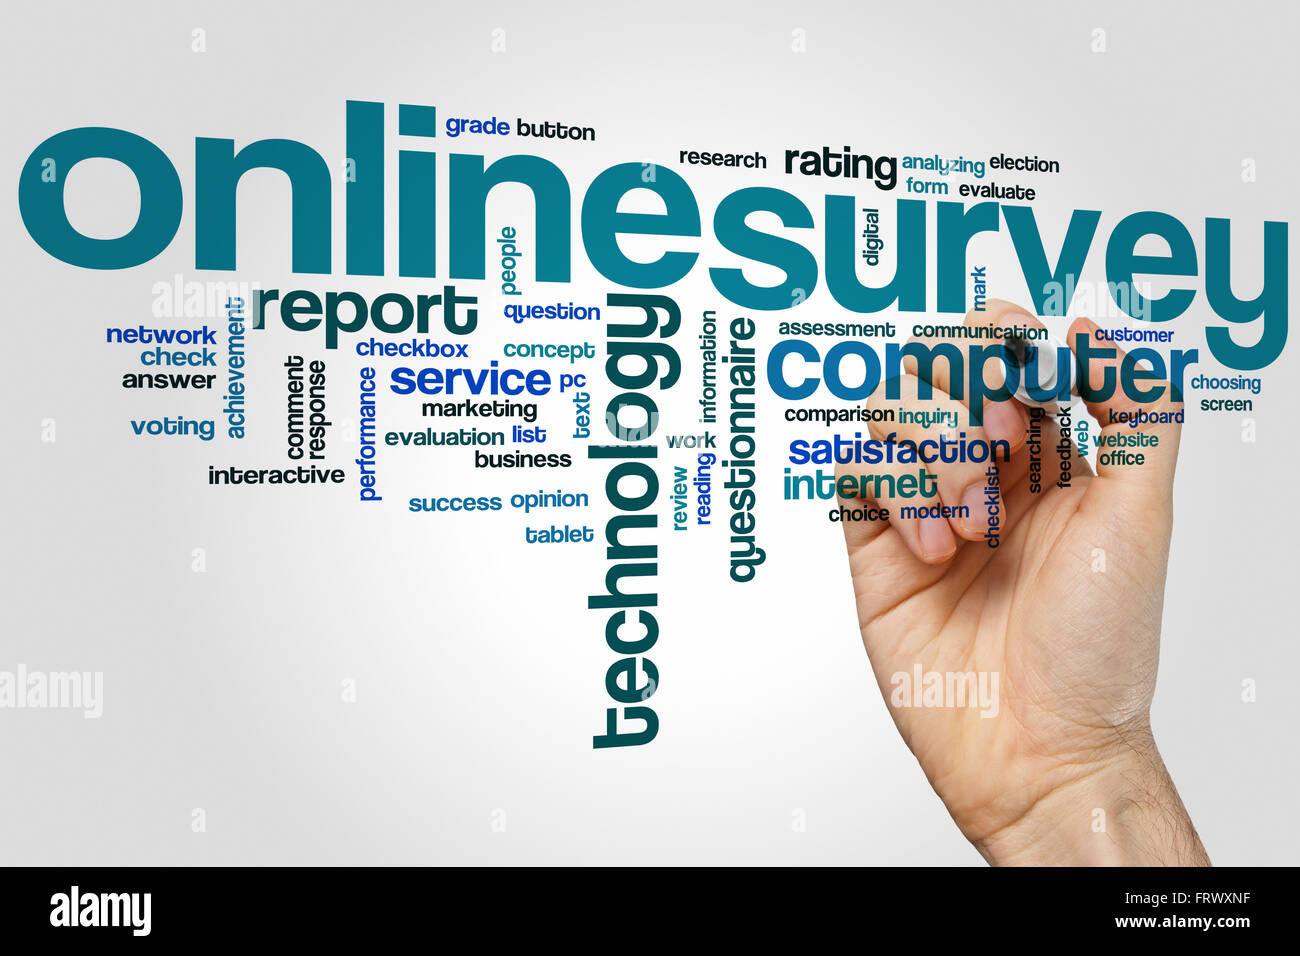 Online survey word cloud concept Stock Photo